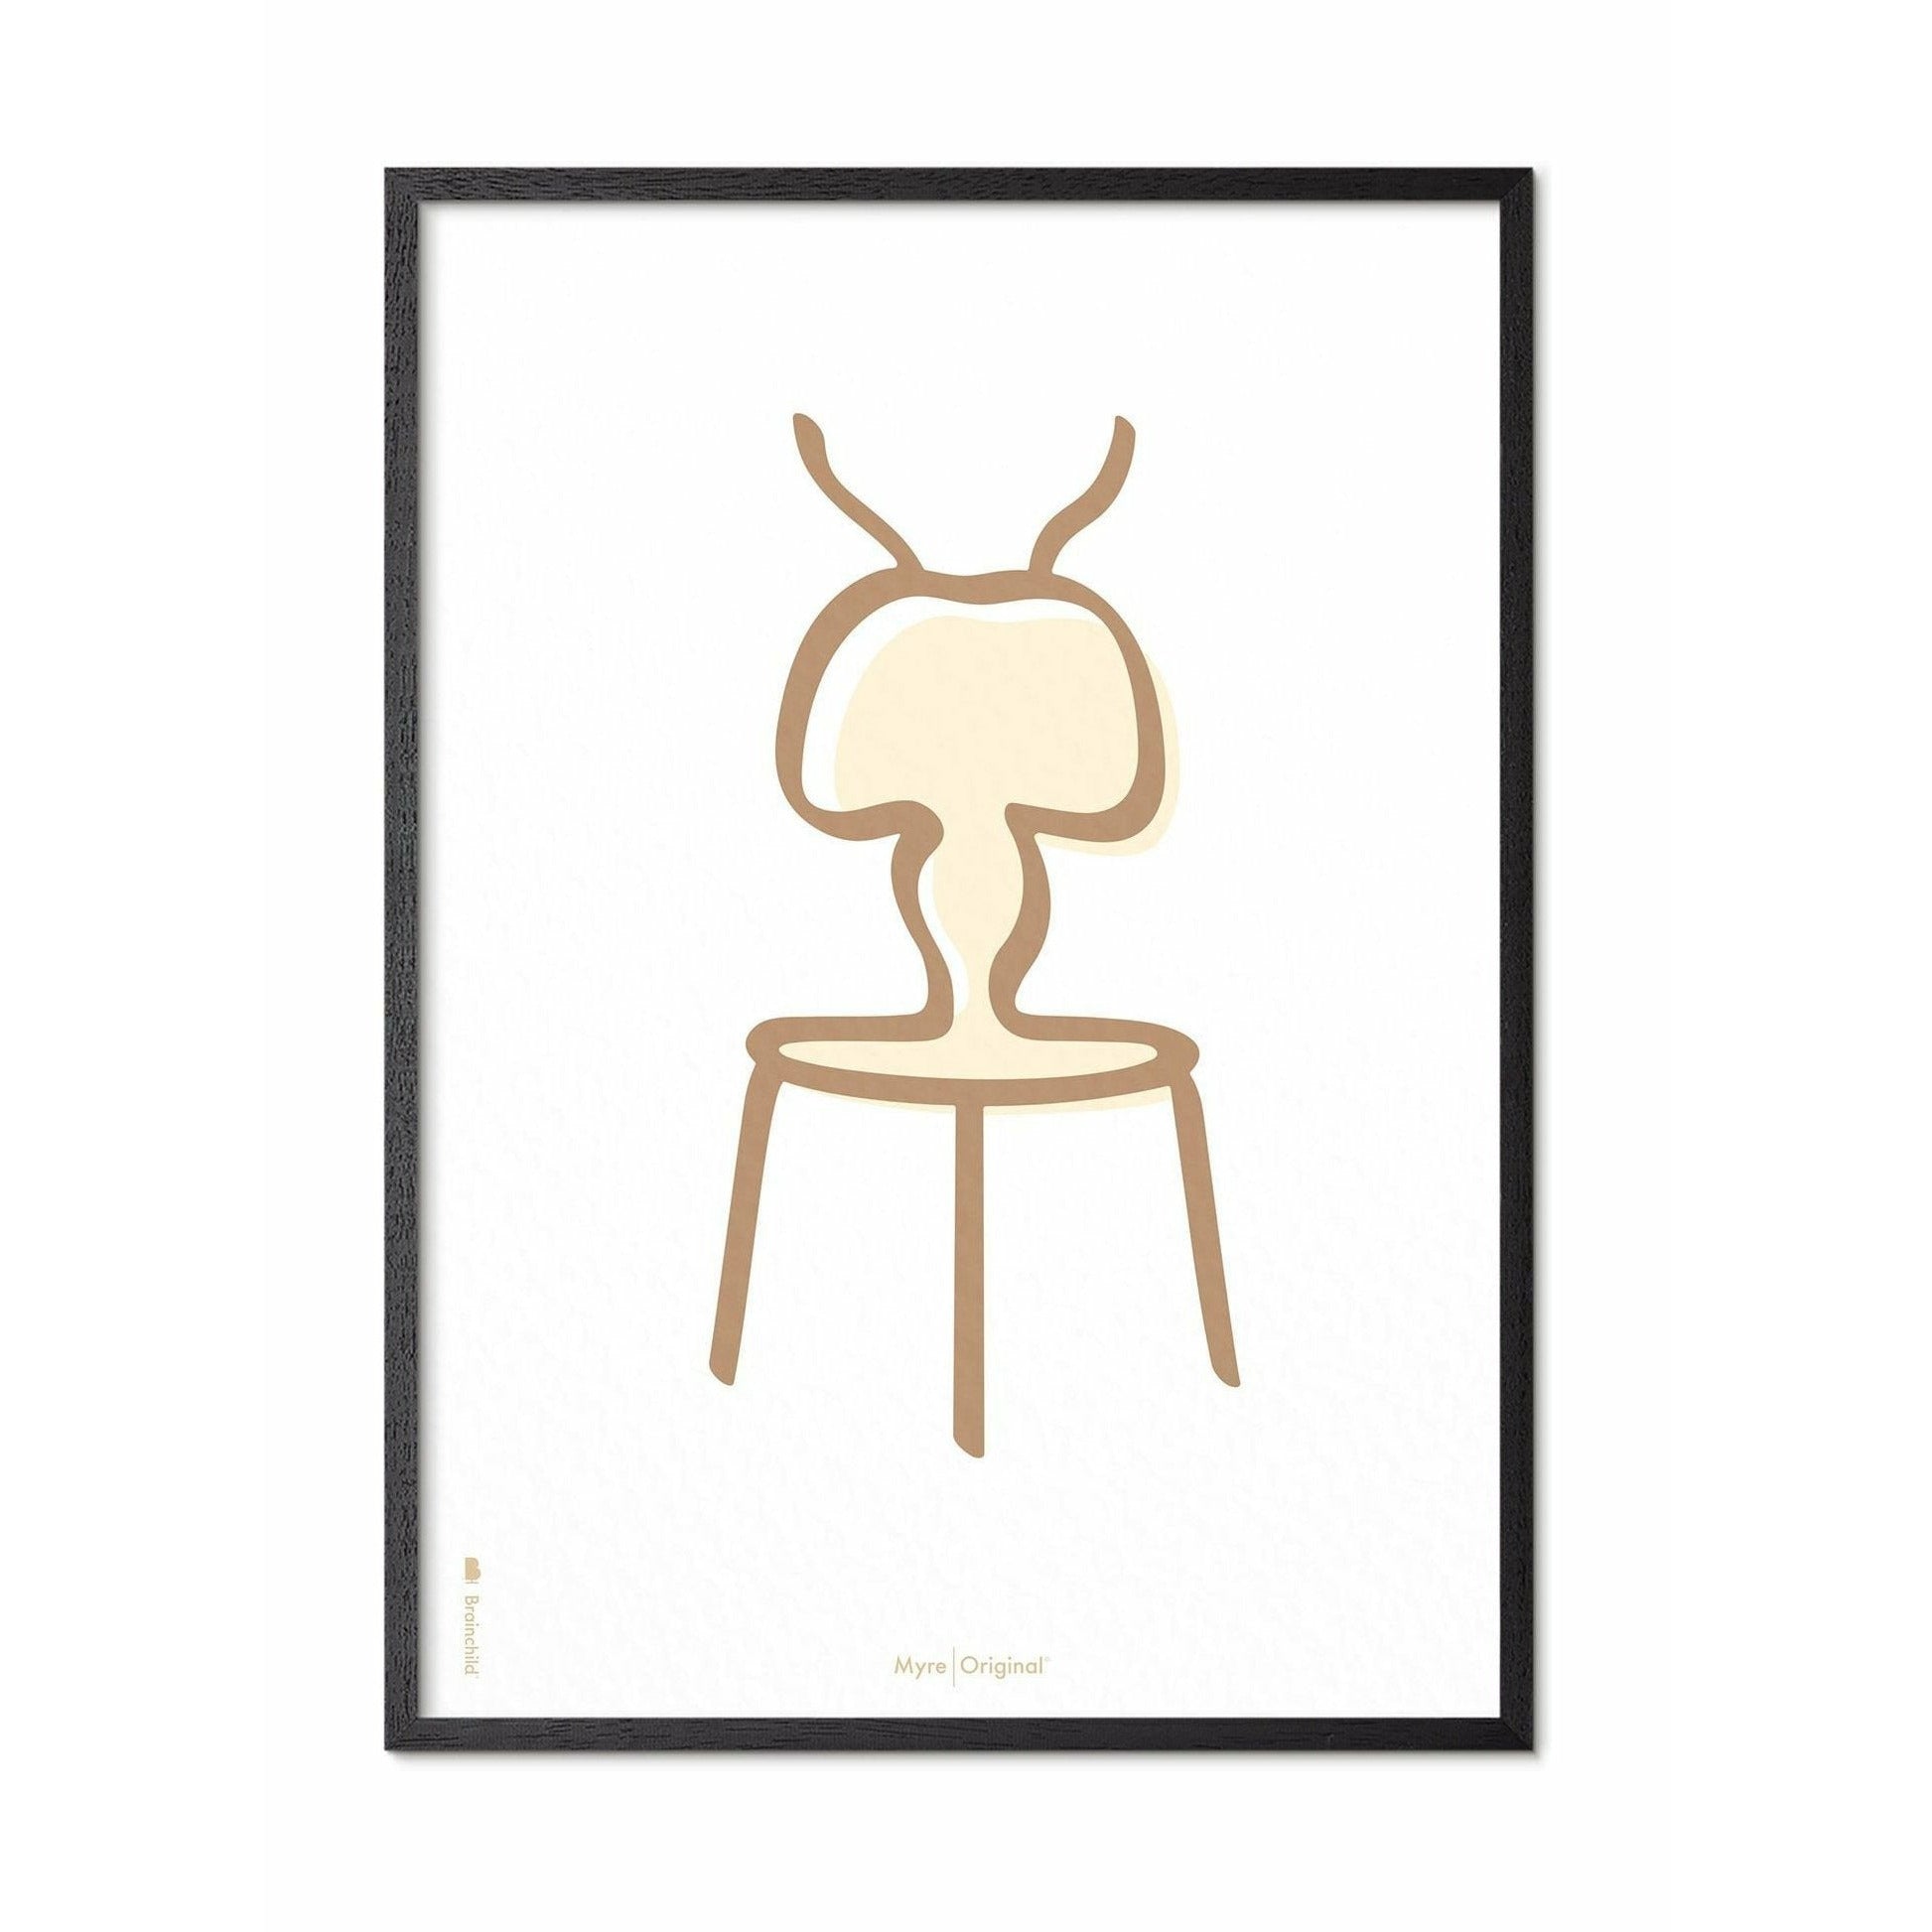 Plakát Ant Line Brainchild, rám v černém lakovaném dřevu 70x100 cm, bílé pozadí